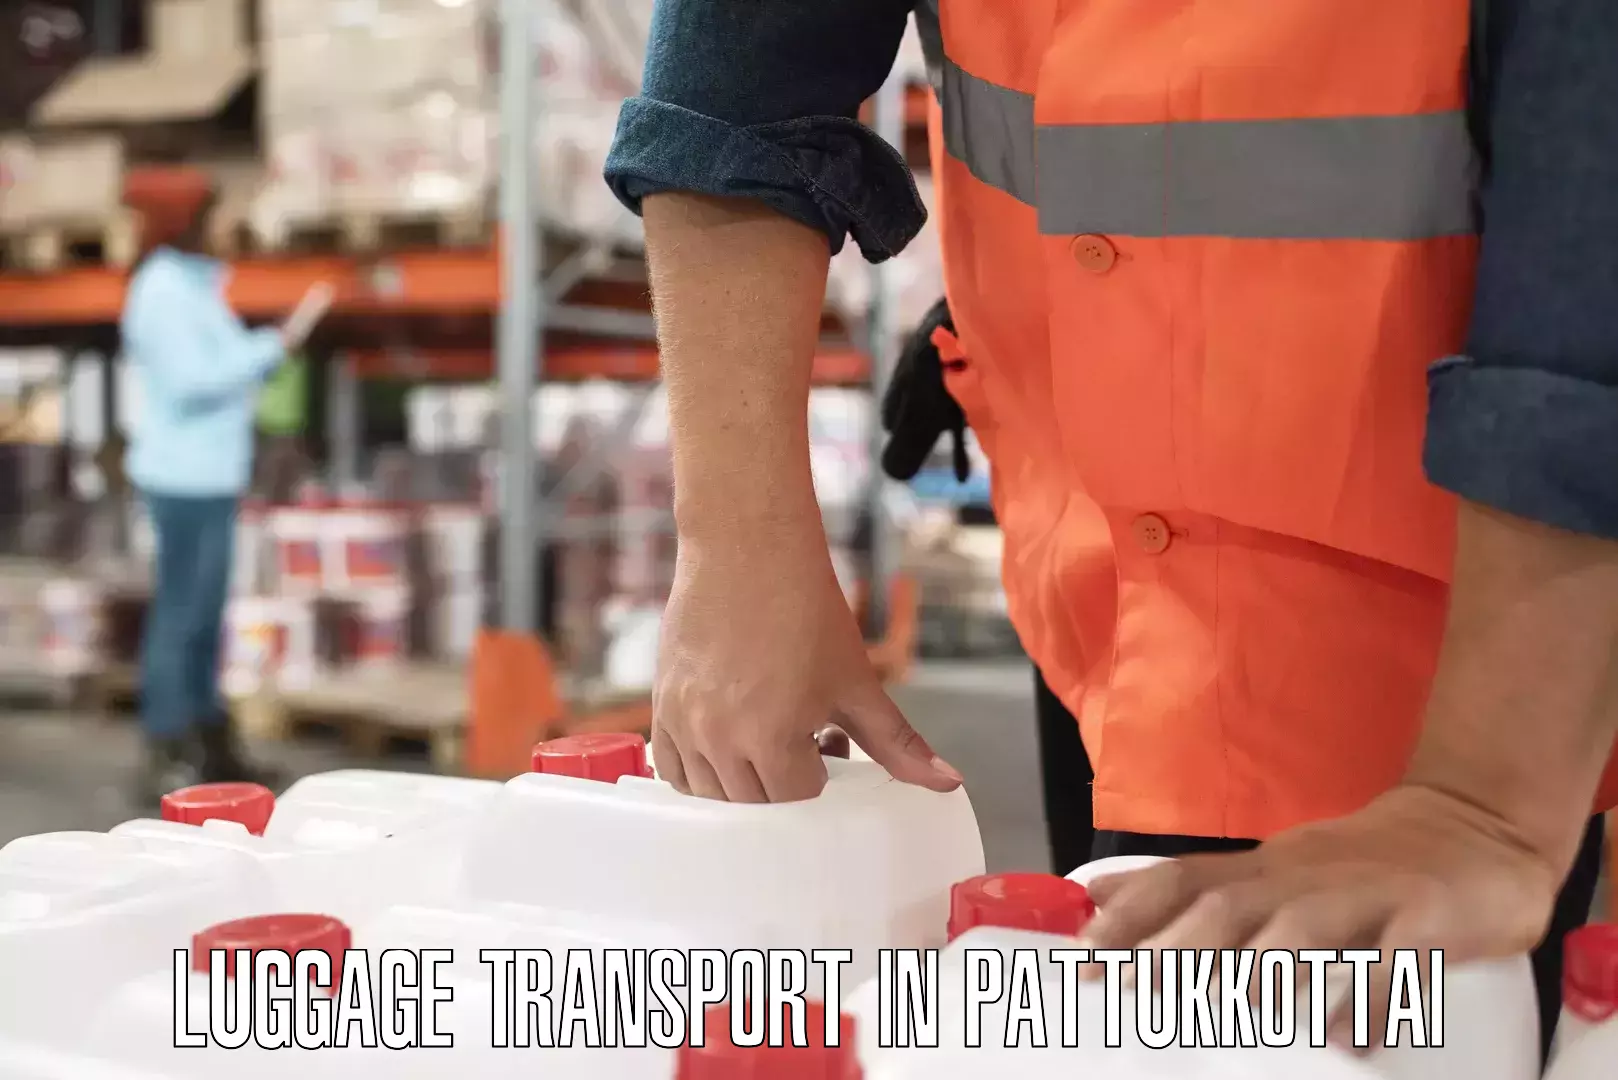 Tailored baggage transport in Pattukkottai